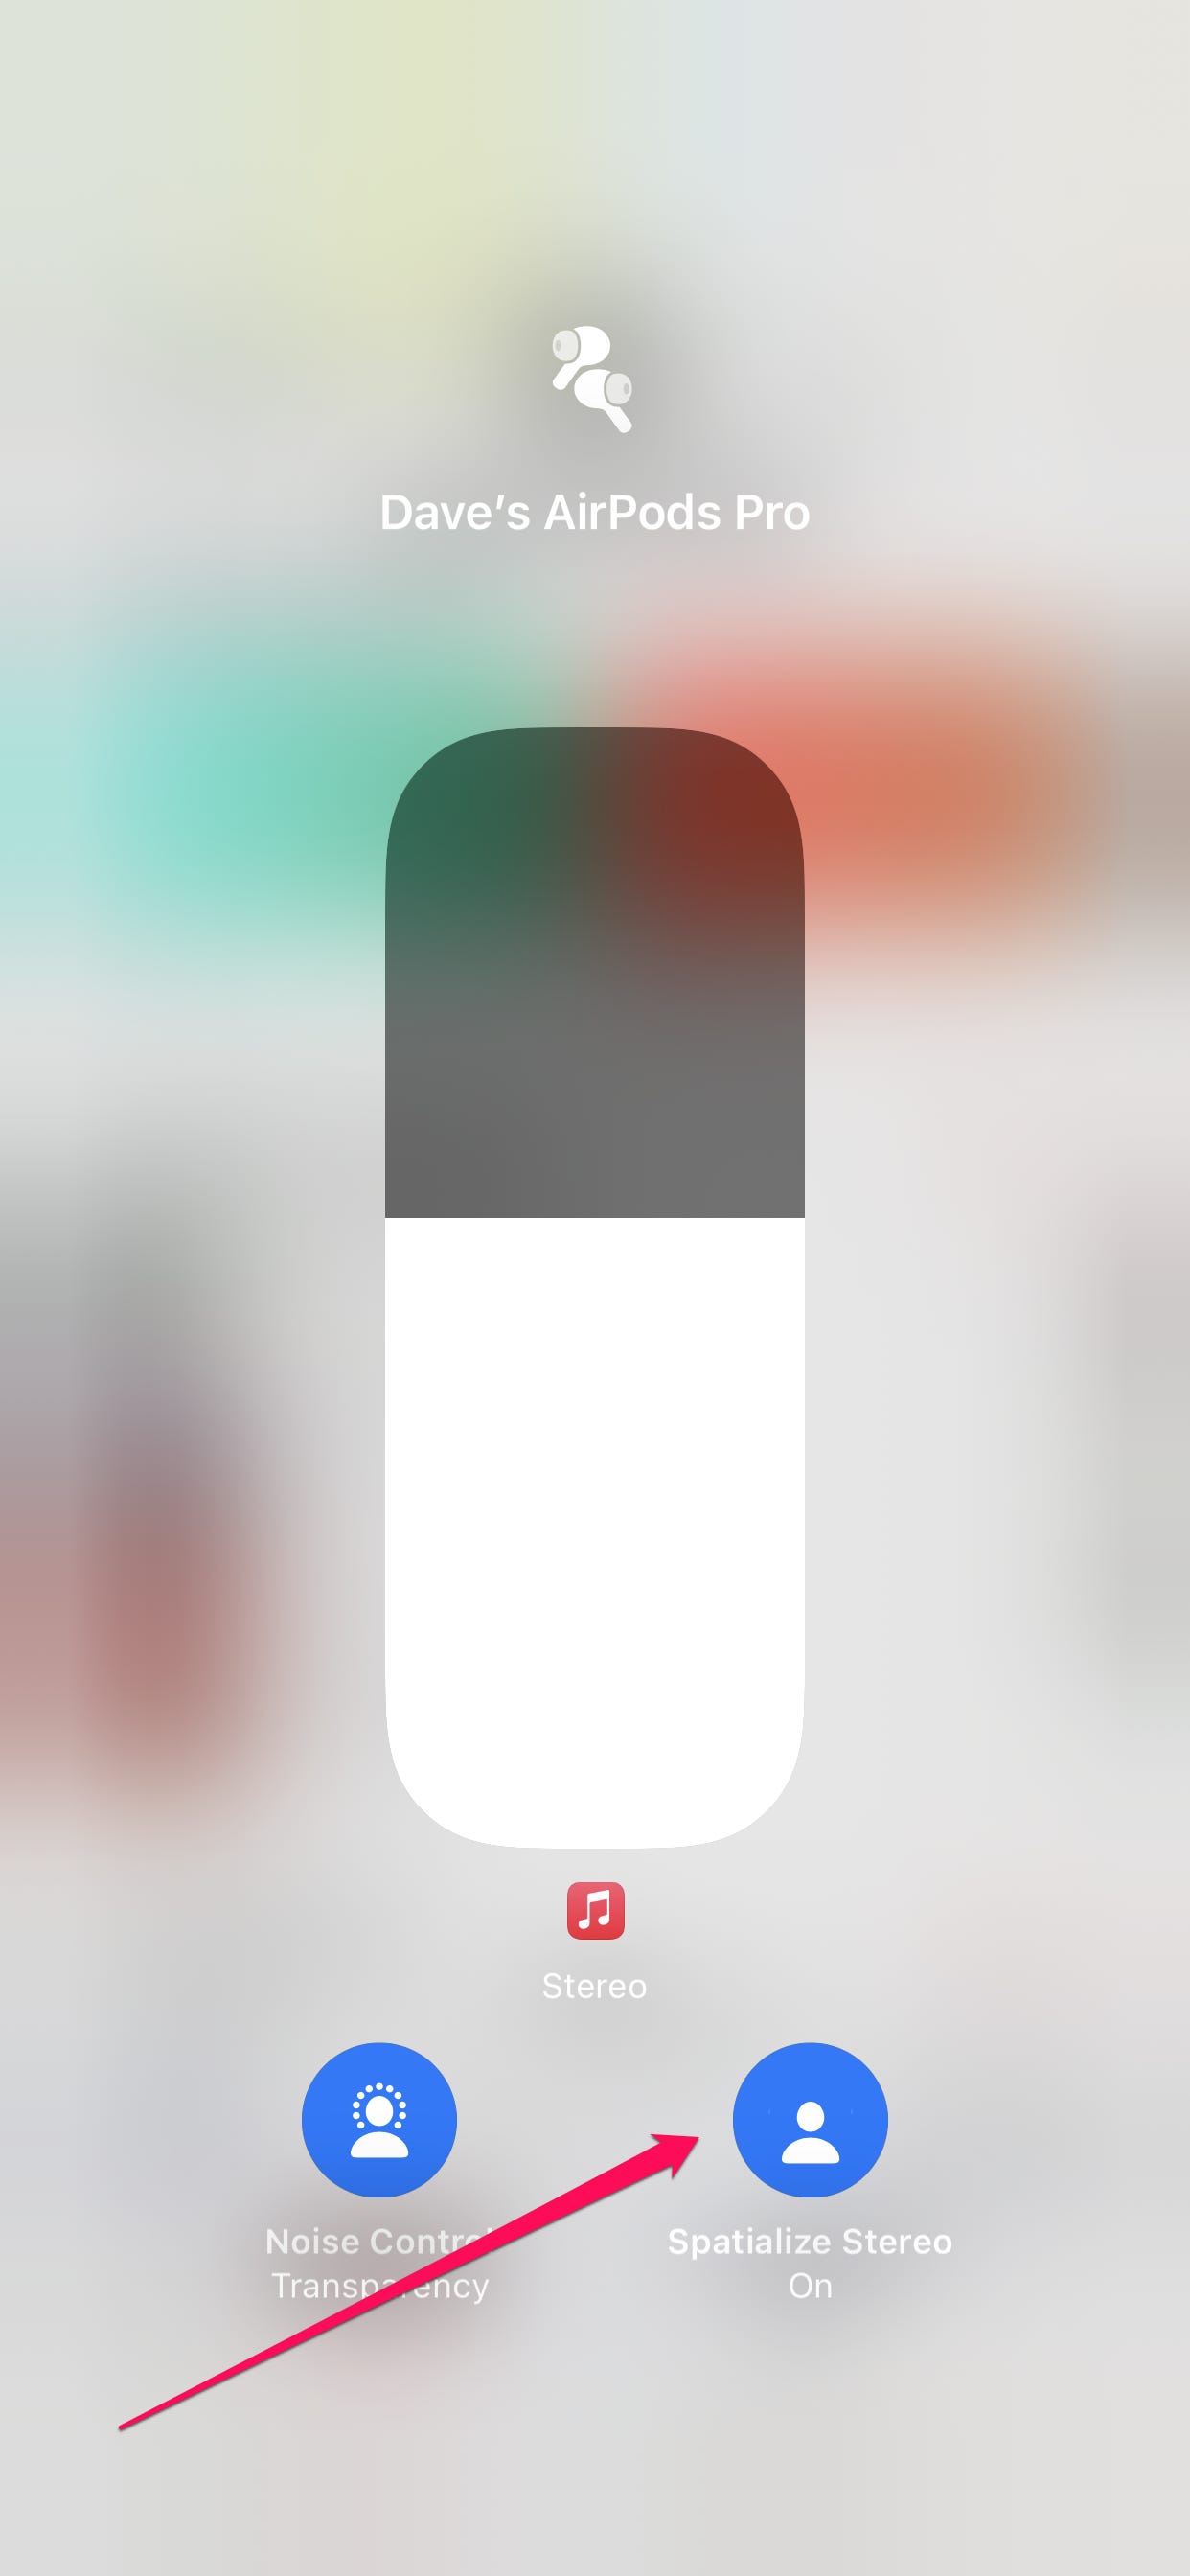 Il centro di controllo del volume in iOS.